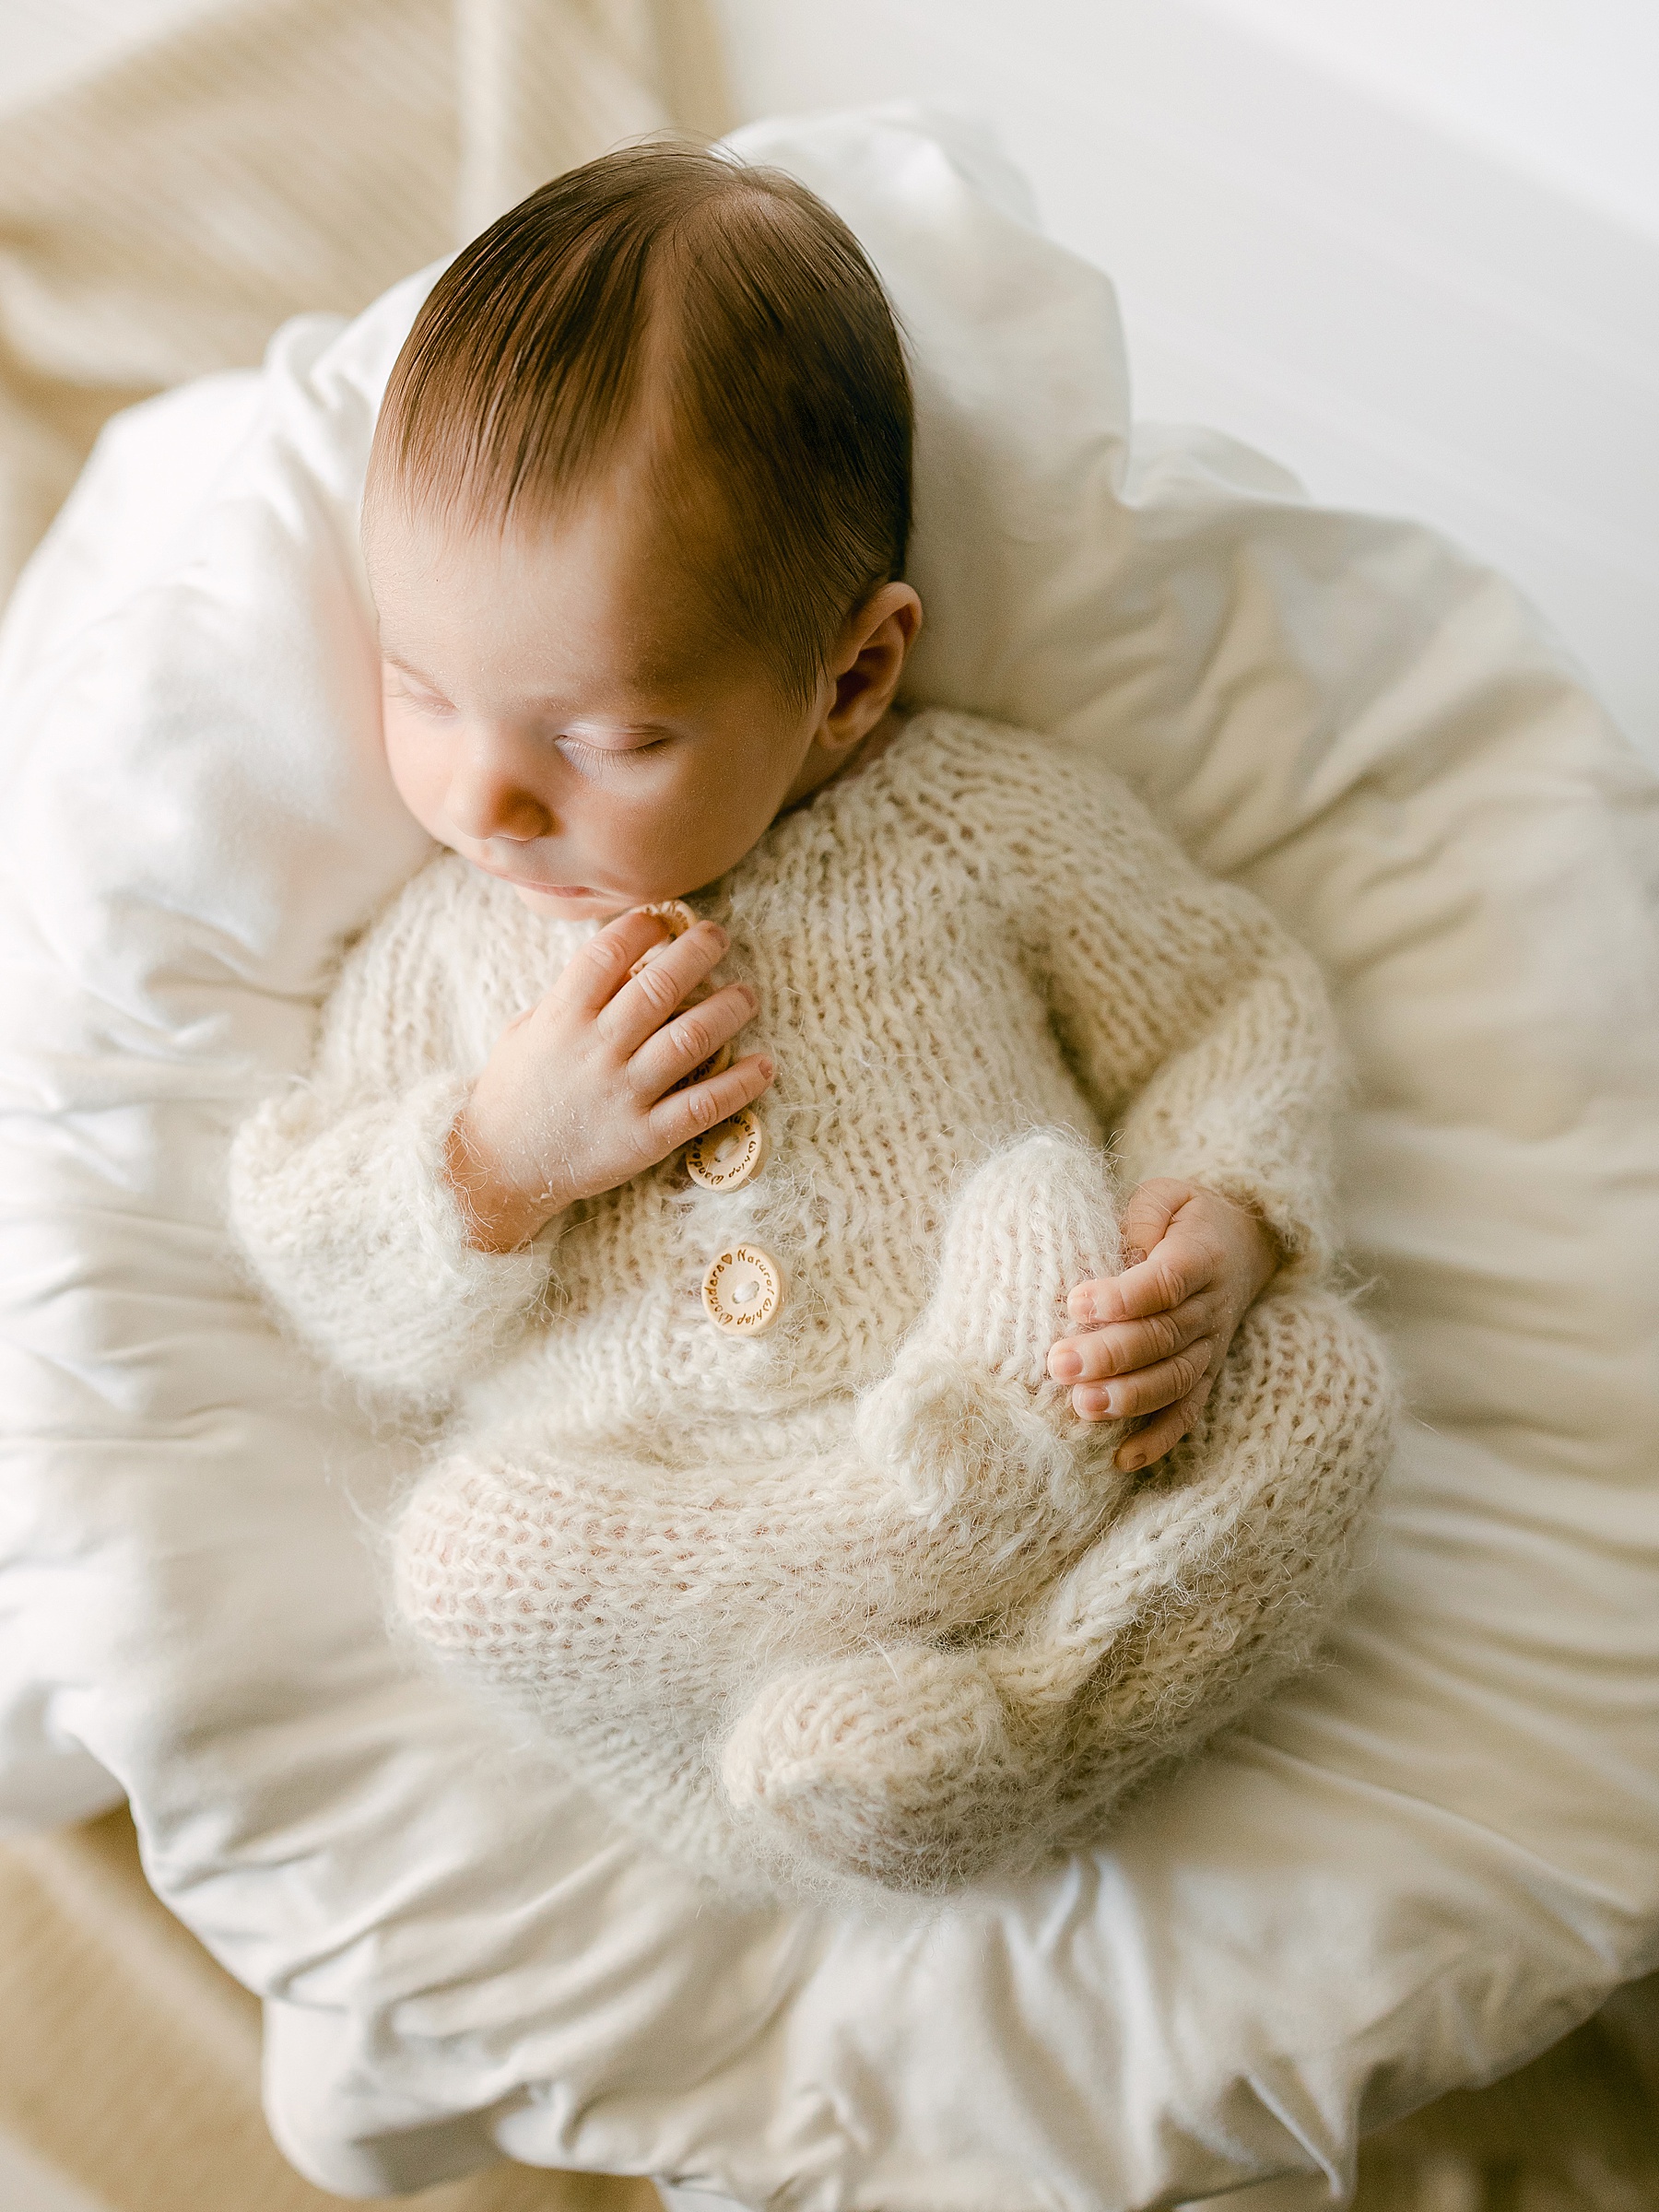 newborn baby boy sleeping in wicker basket wearing a wool outfit